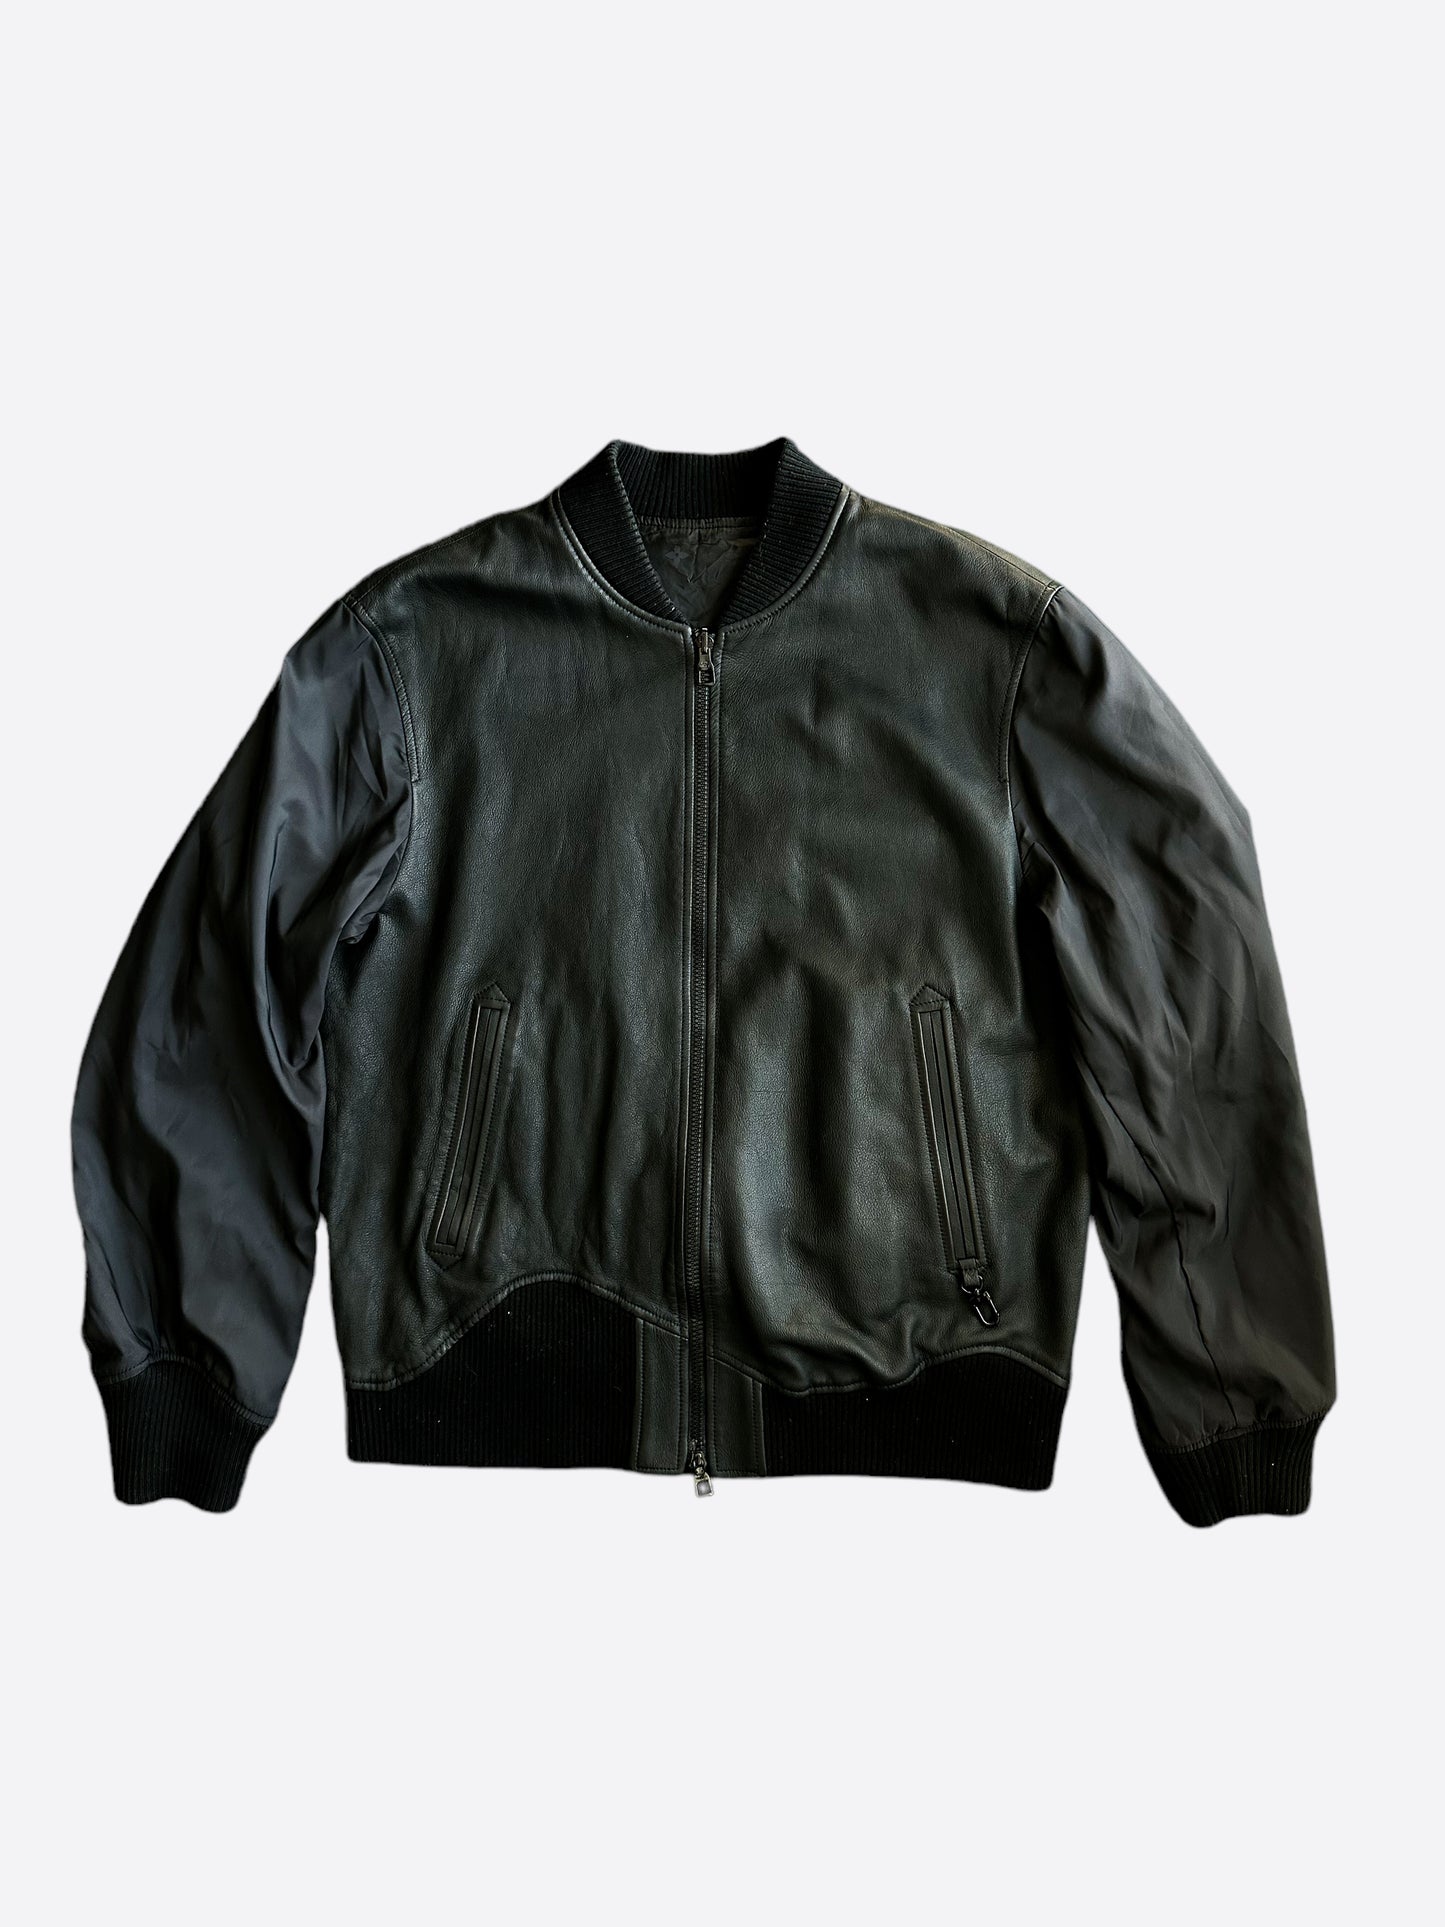 Louis Vuitton Reversible Leather Jacket